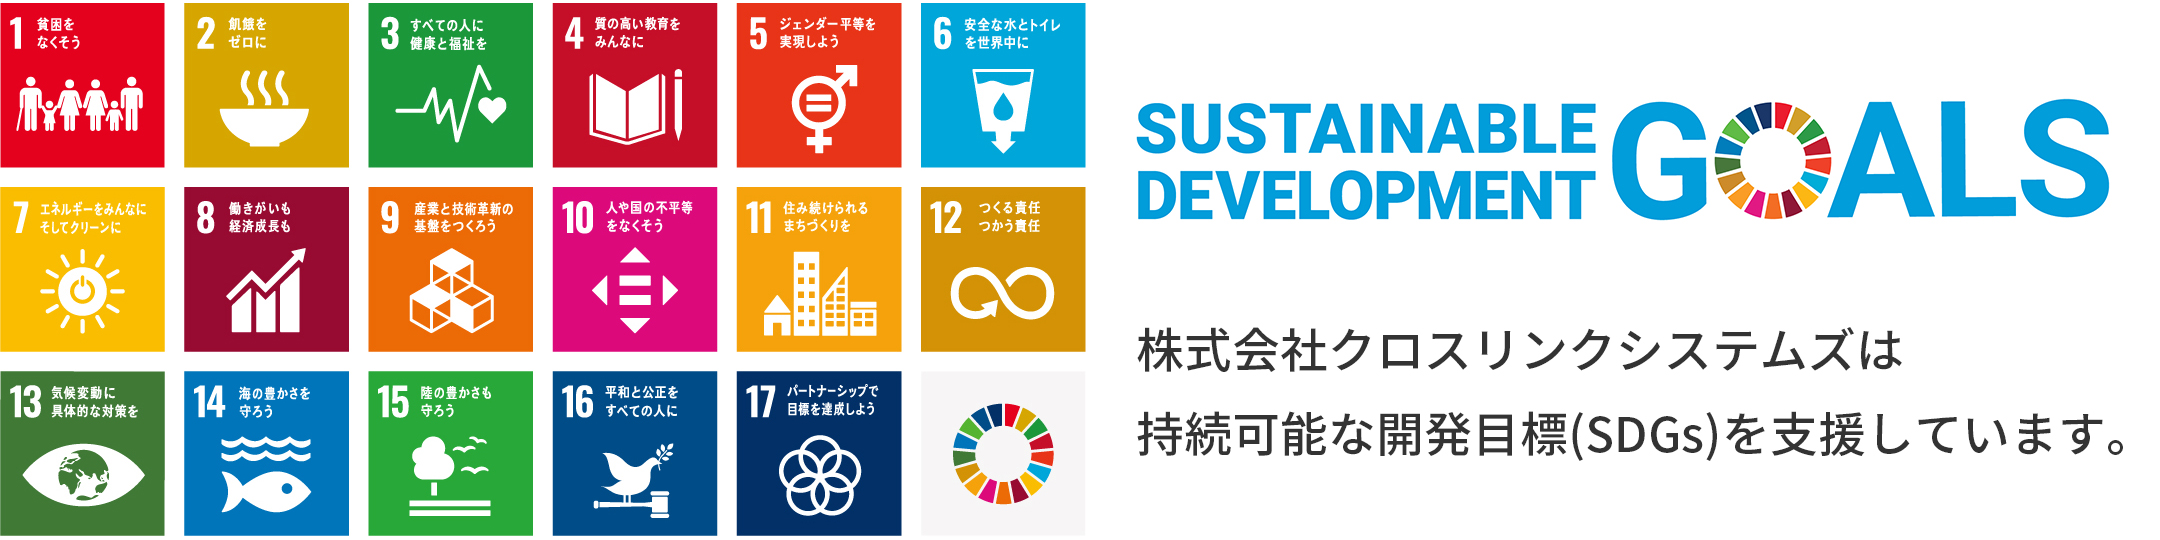 株式会社クロスリンクシステムズは持続可能な開発目標(SDGs)を支援しています。